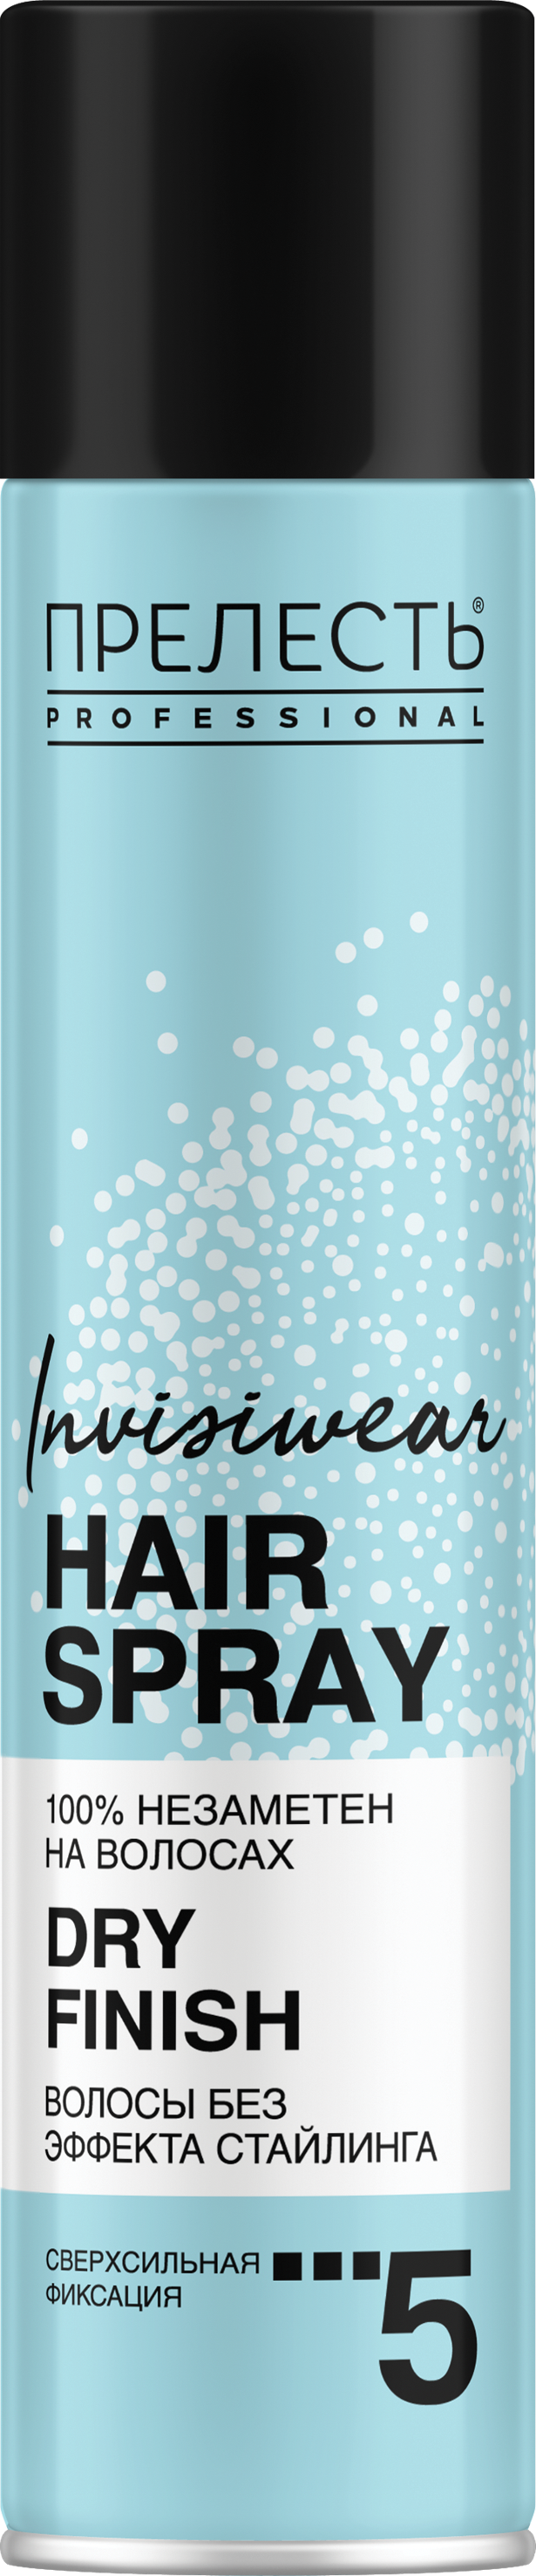 Лак для волос Прелесть Invisiwear Невесомый, сухое распыление, 300 мл